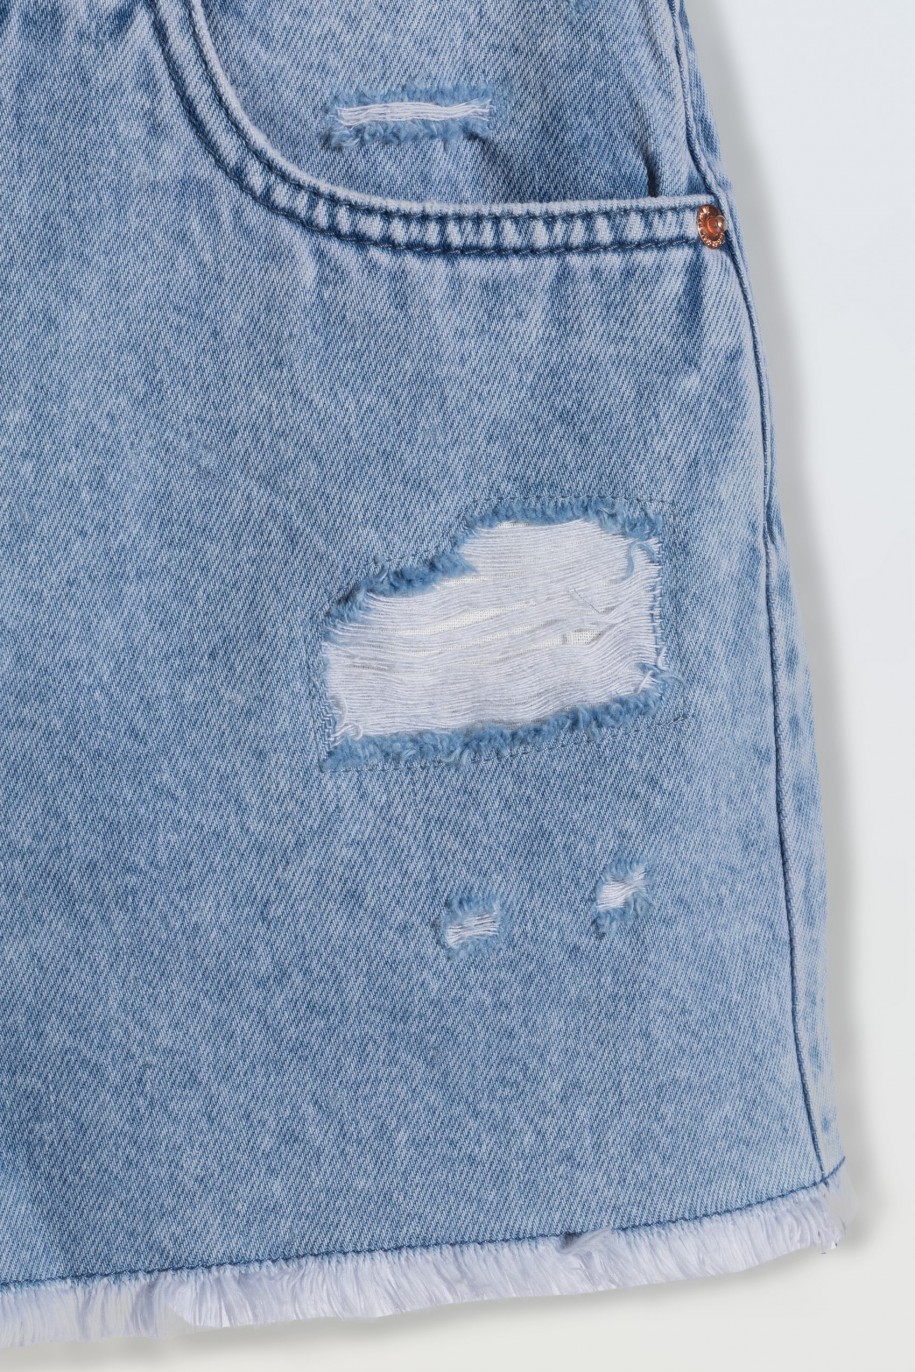 Jasnoniebieskie krótkie spodenki jeansowe z modnymi przetarciami - 46792